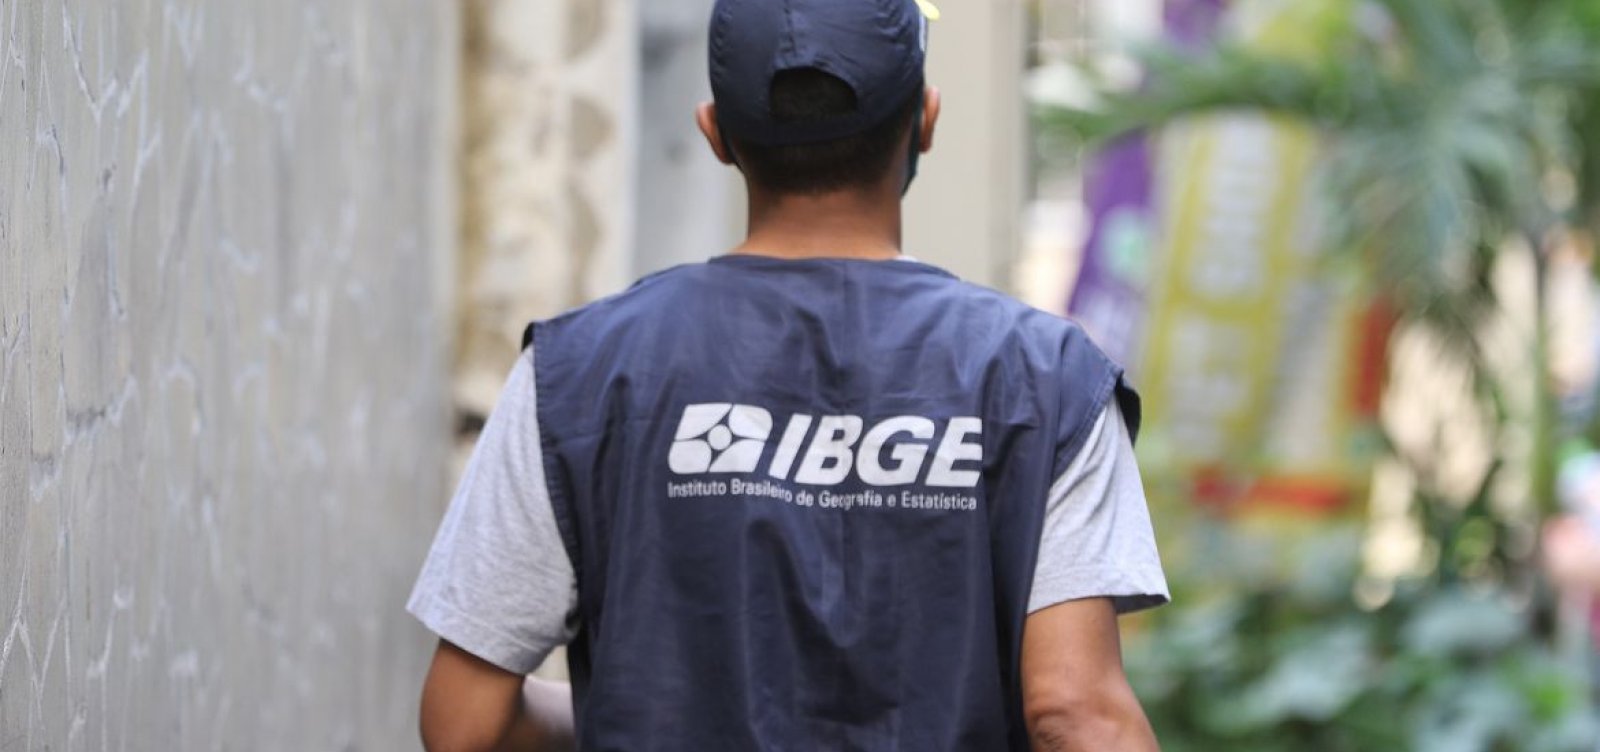 IBGE é autorizado a contratar recenseadores sem precisar realizar processos seletivos